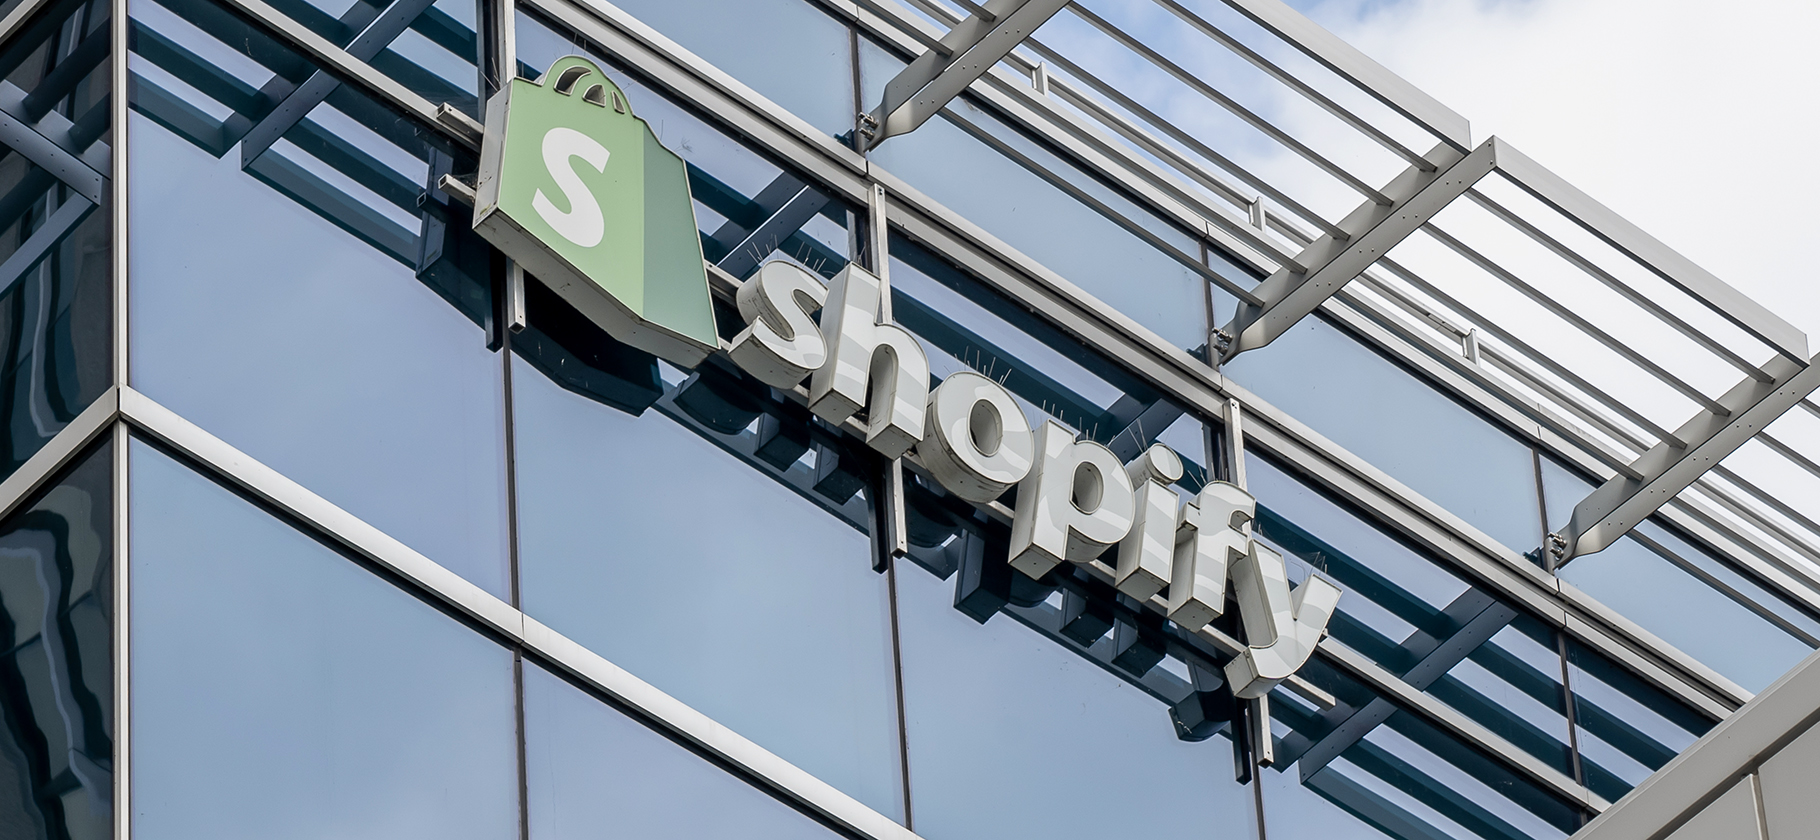 Shopify запланировала сплит акций 10 к 1 и выдачу основателю «суперакции»